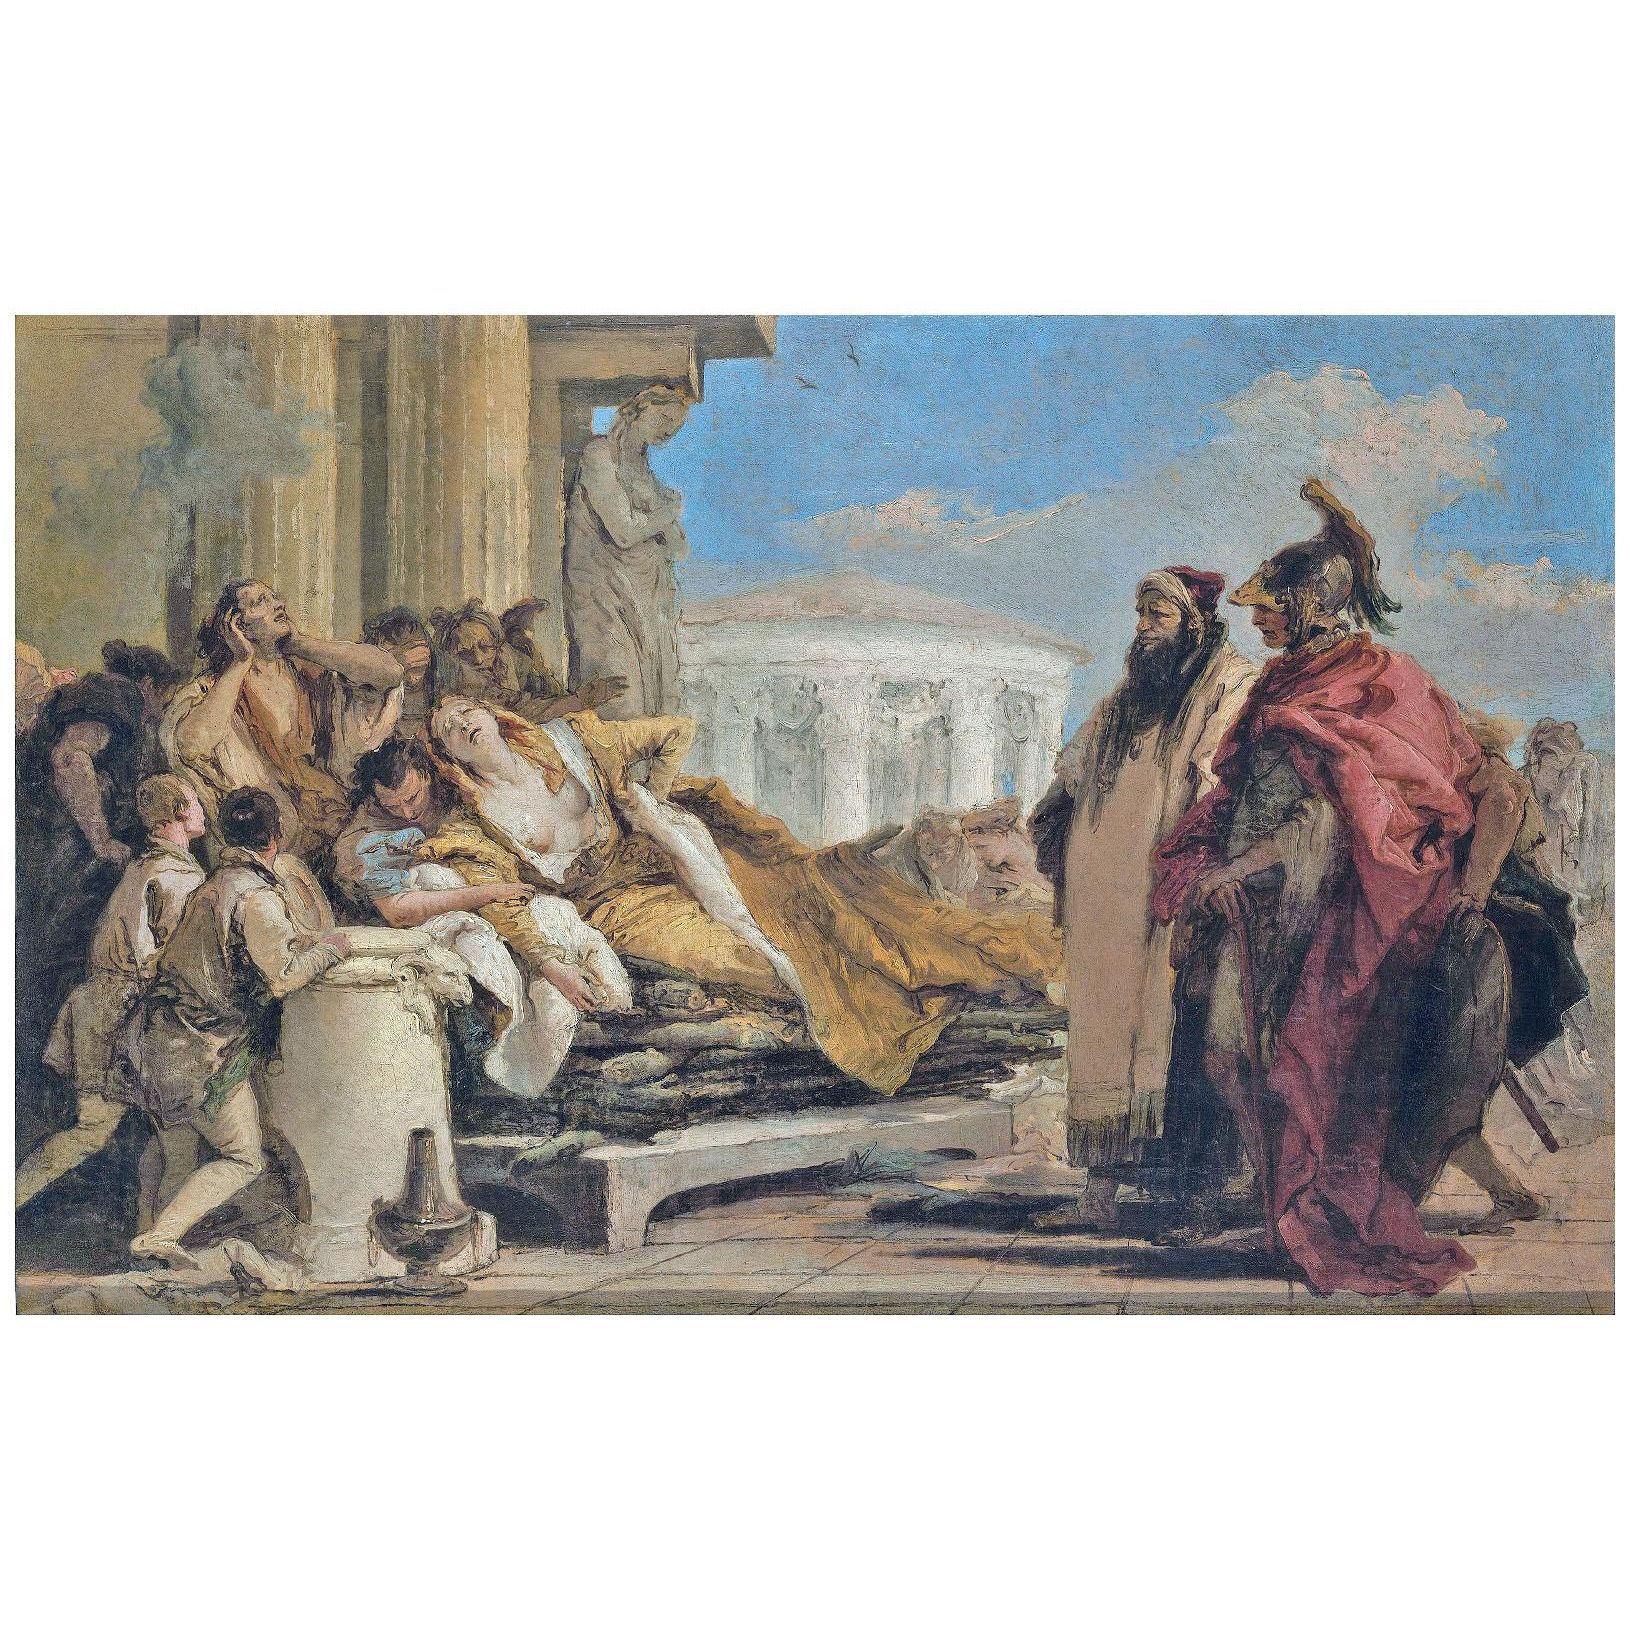 Giovanni Battista Tiepolo. Morte di Didone. 1757-1760. Pushkin Museum